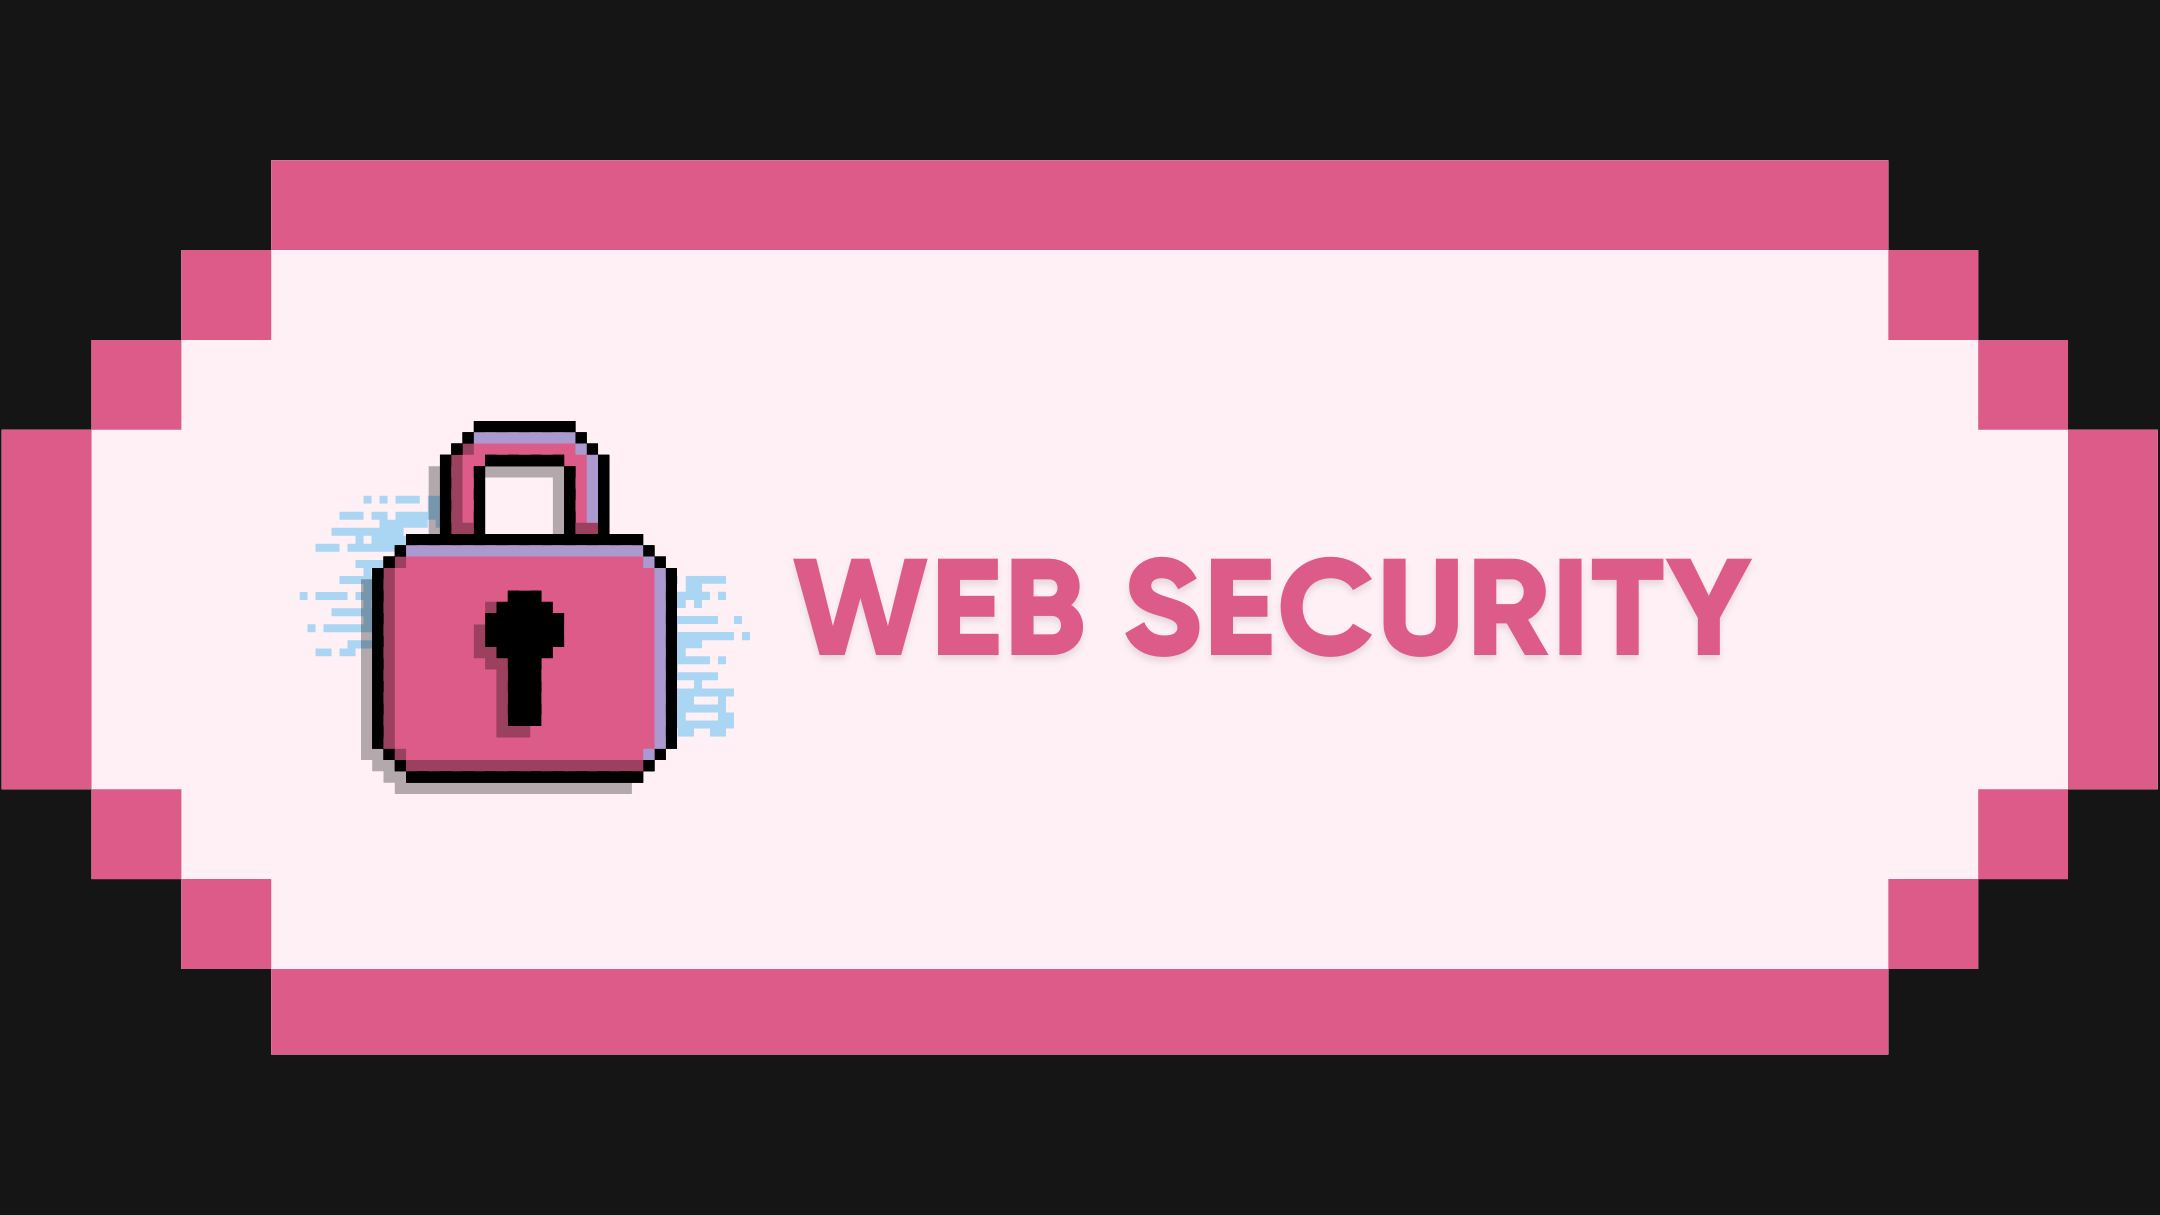 Web3 Security